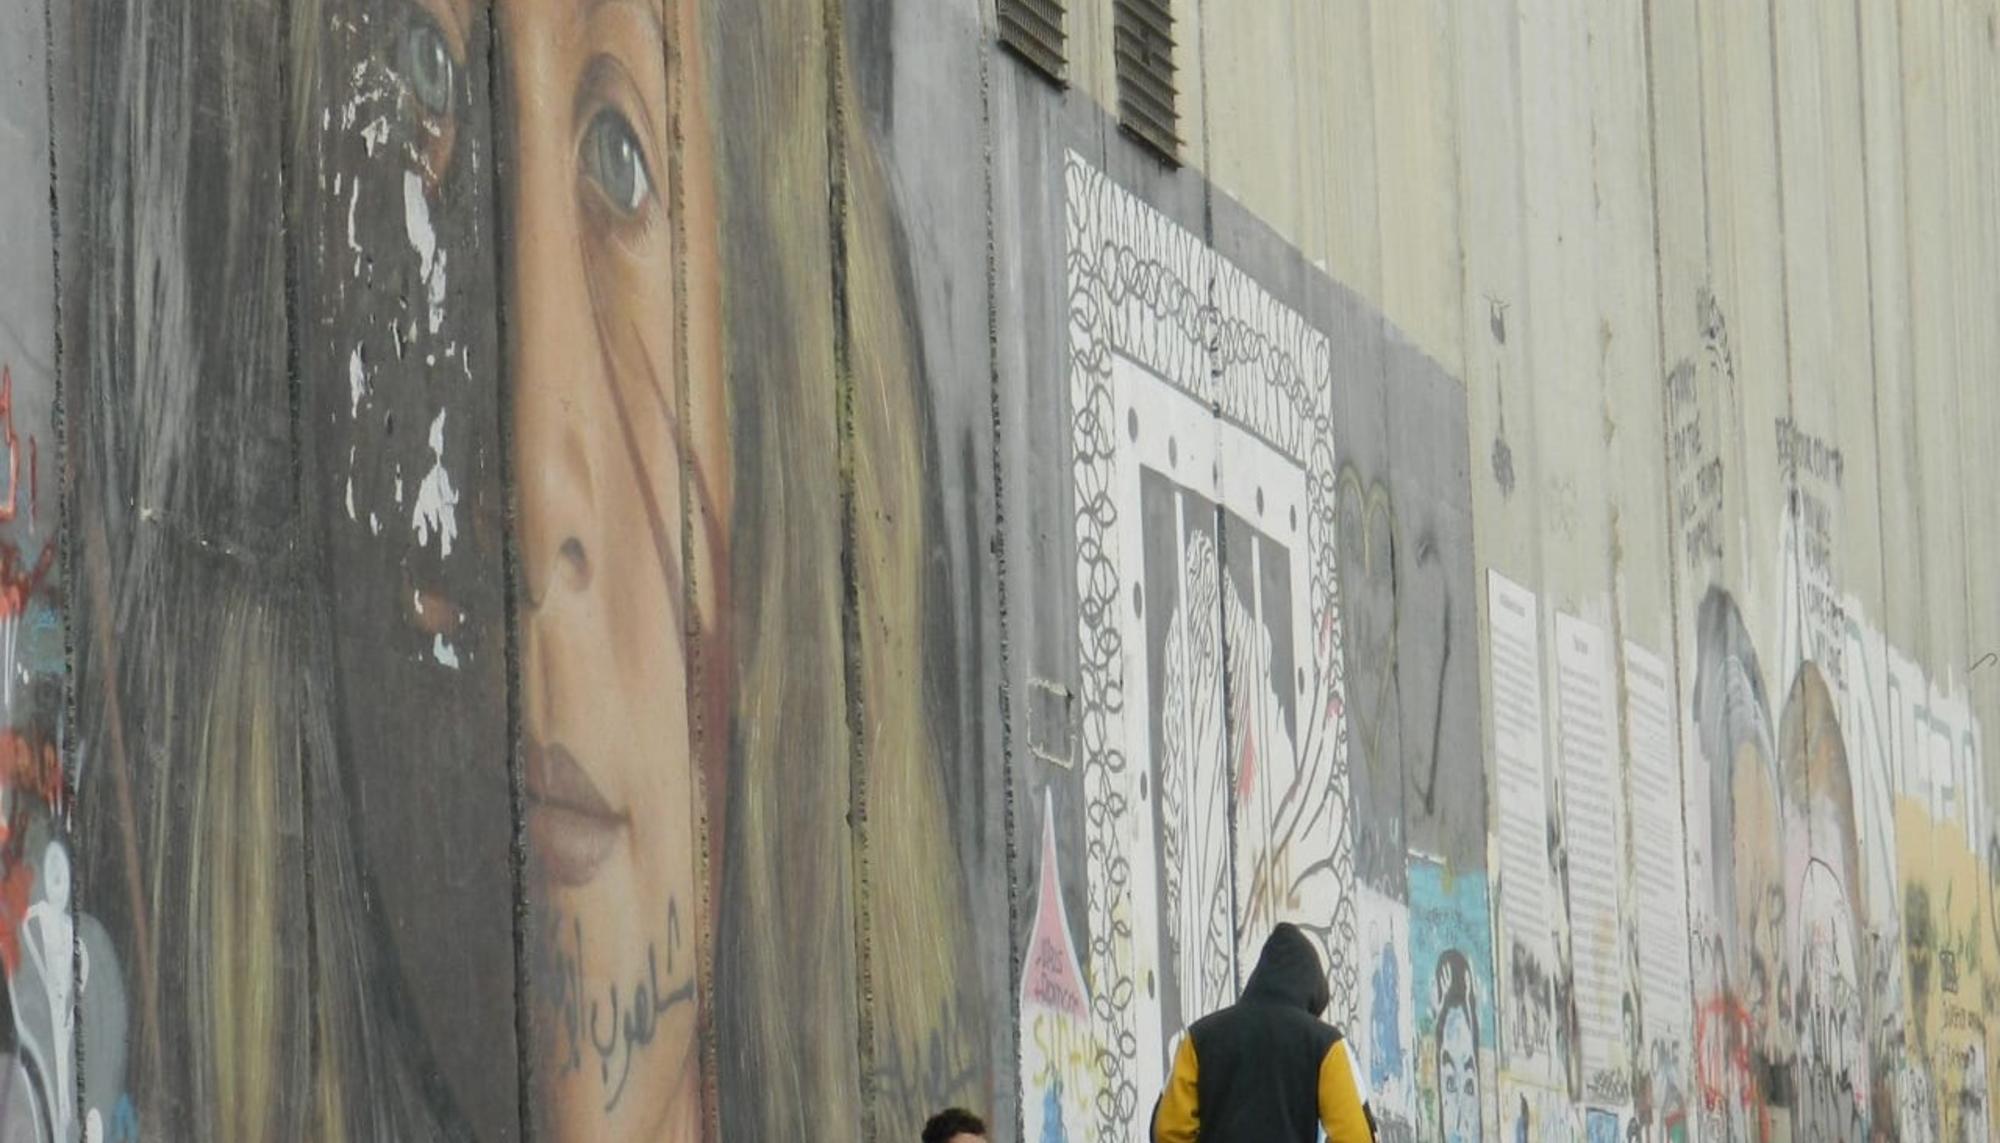 Muro palestina ramala itsaslore